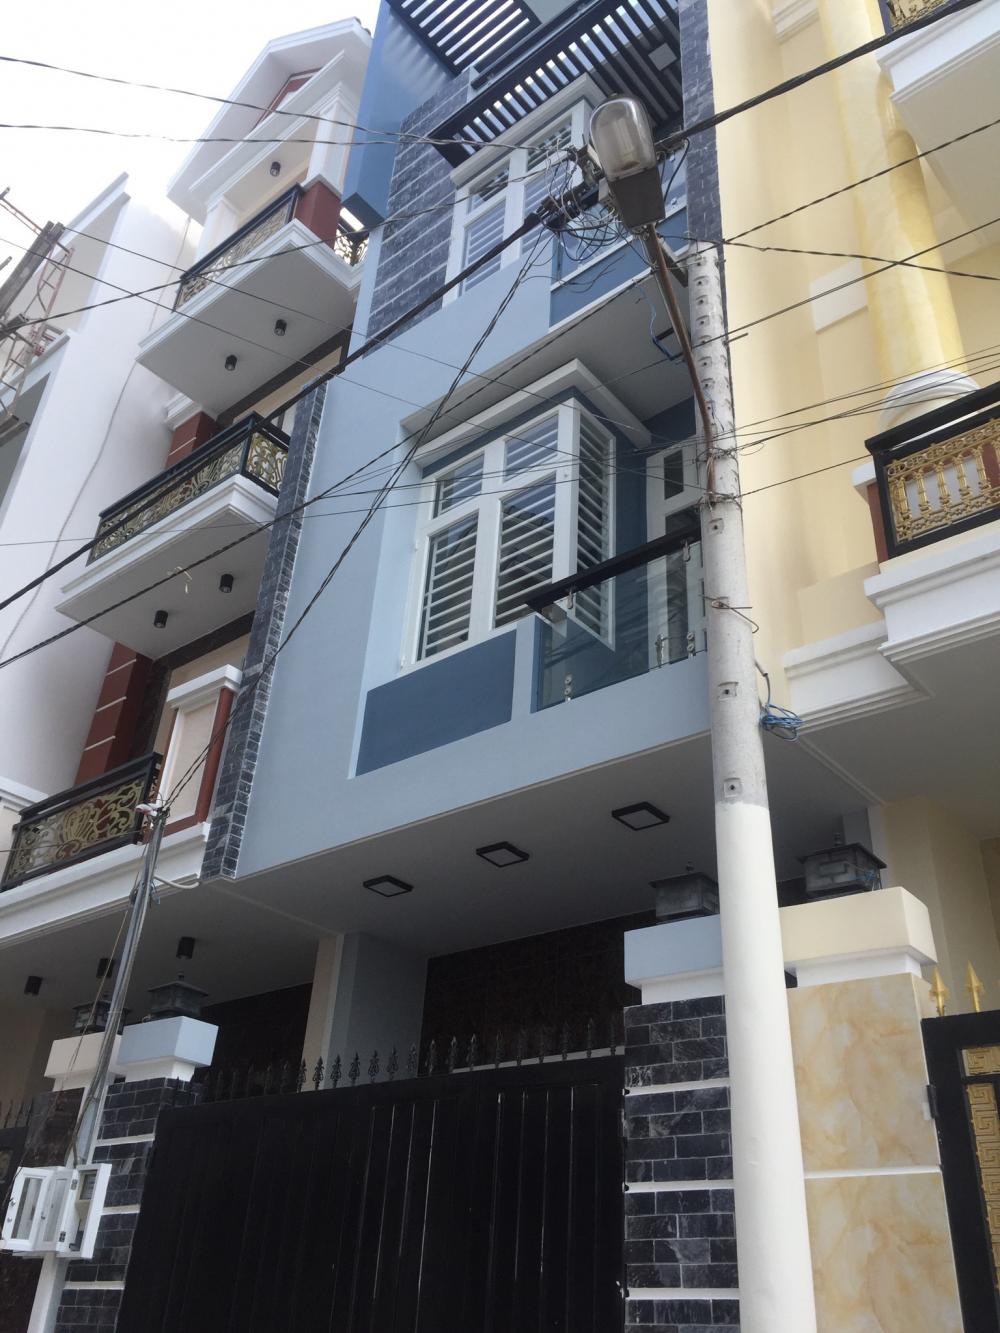 Bán nhà mới xây phường Hiệp Bình Chánh, 1 trệt, 3 lầu đường số 25 Phạm Văn Đồng, giá 2.8 tỷ